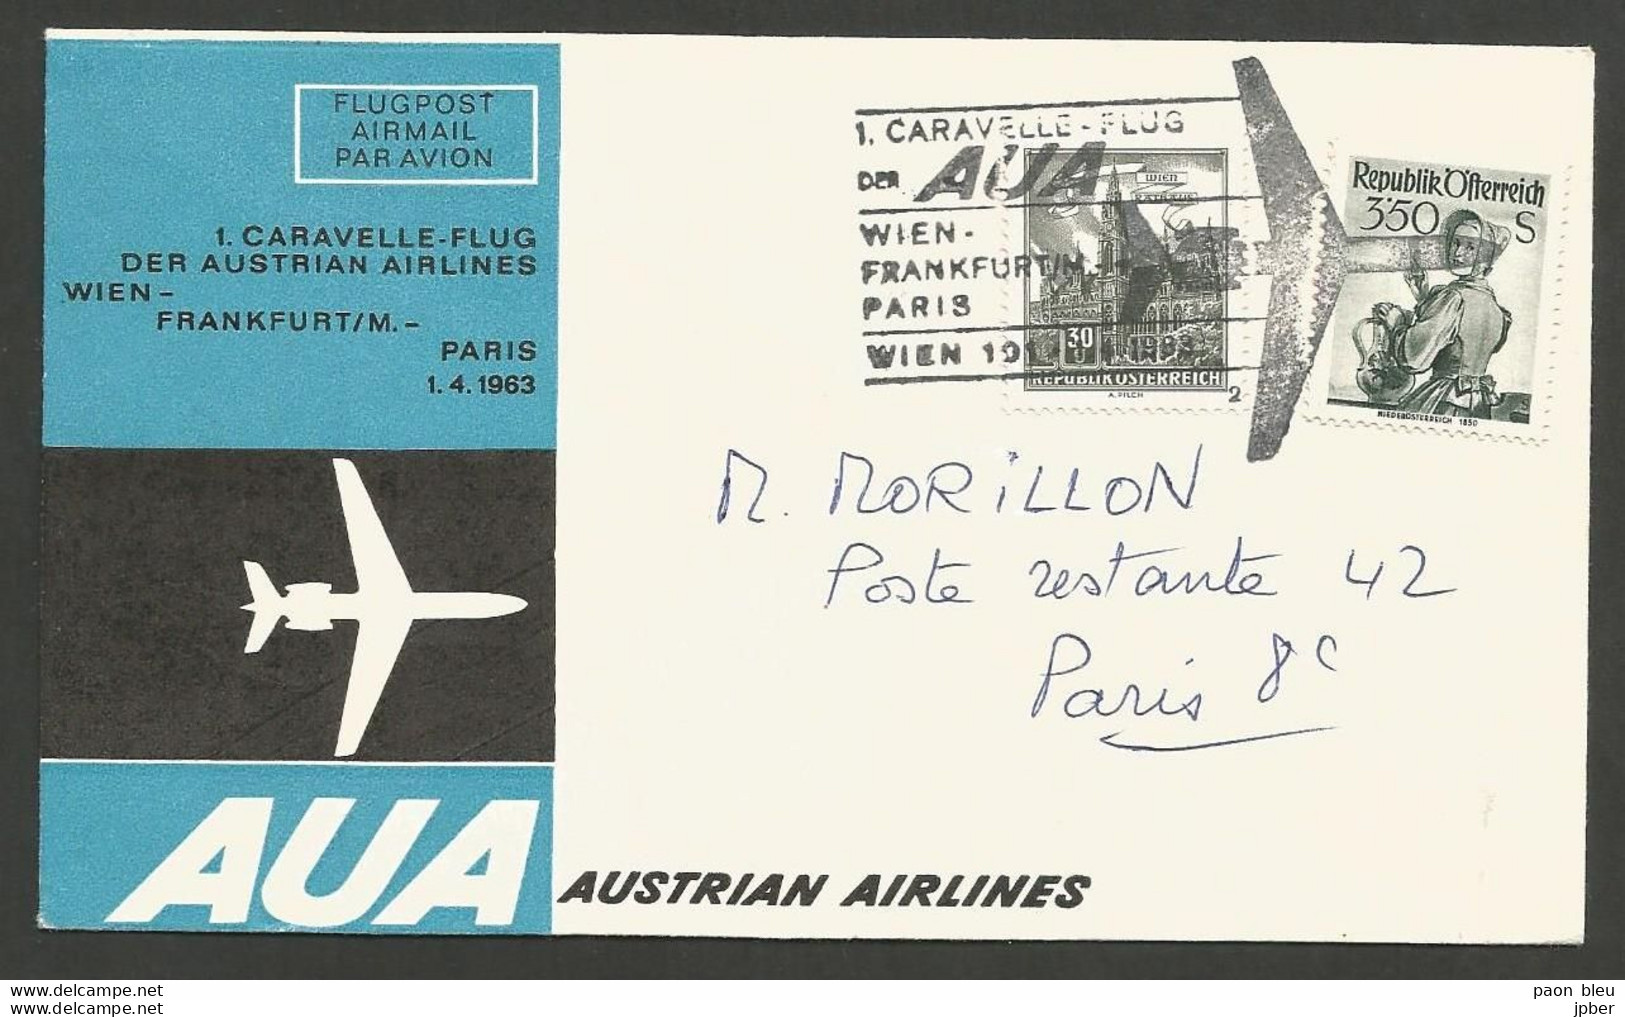 Aérophilatélie - Autriche - AUA Austrian Airlines - Wien-Frankfurt-Paris 1-4-63 - Wien Rathaus - Niederösterreich 1950 - Primi Voli